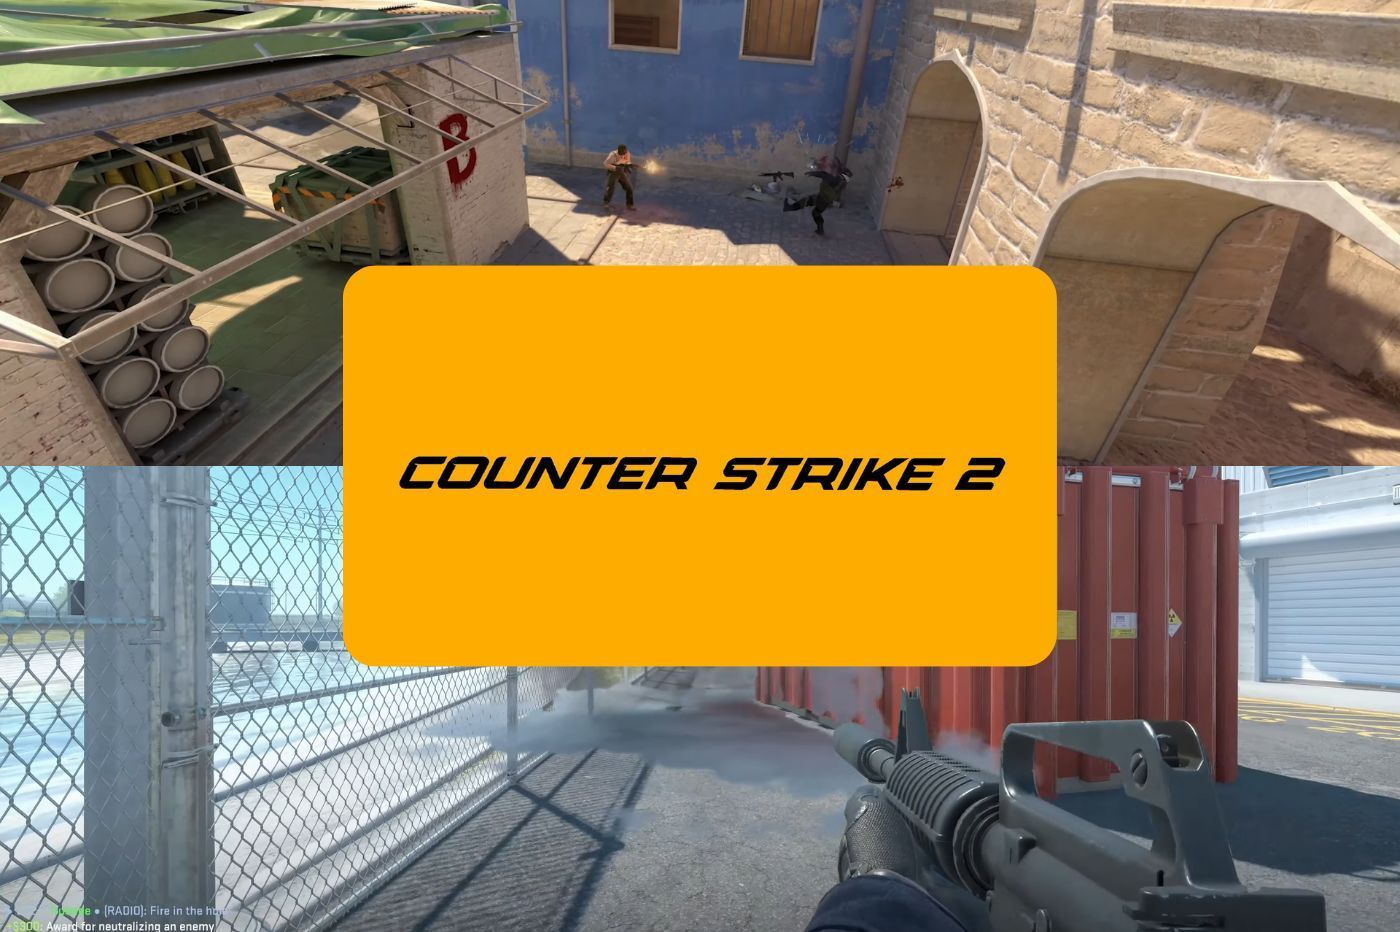 Counter Strike 2 est officiel : ça va révolutionner la scène eSport !